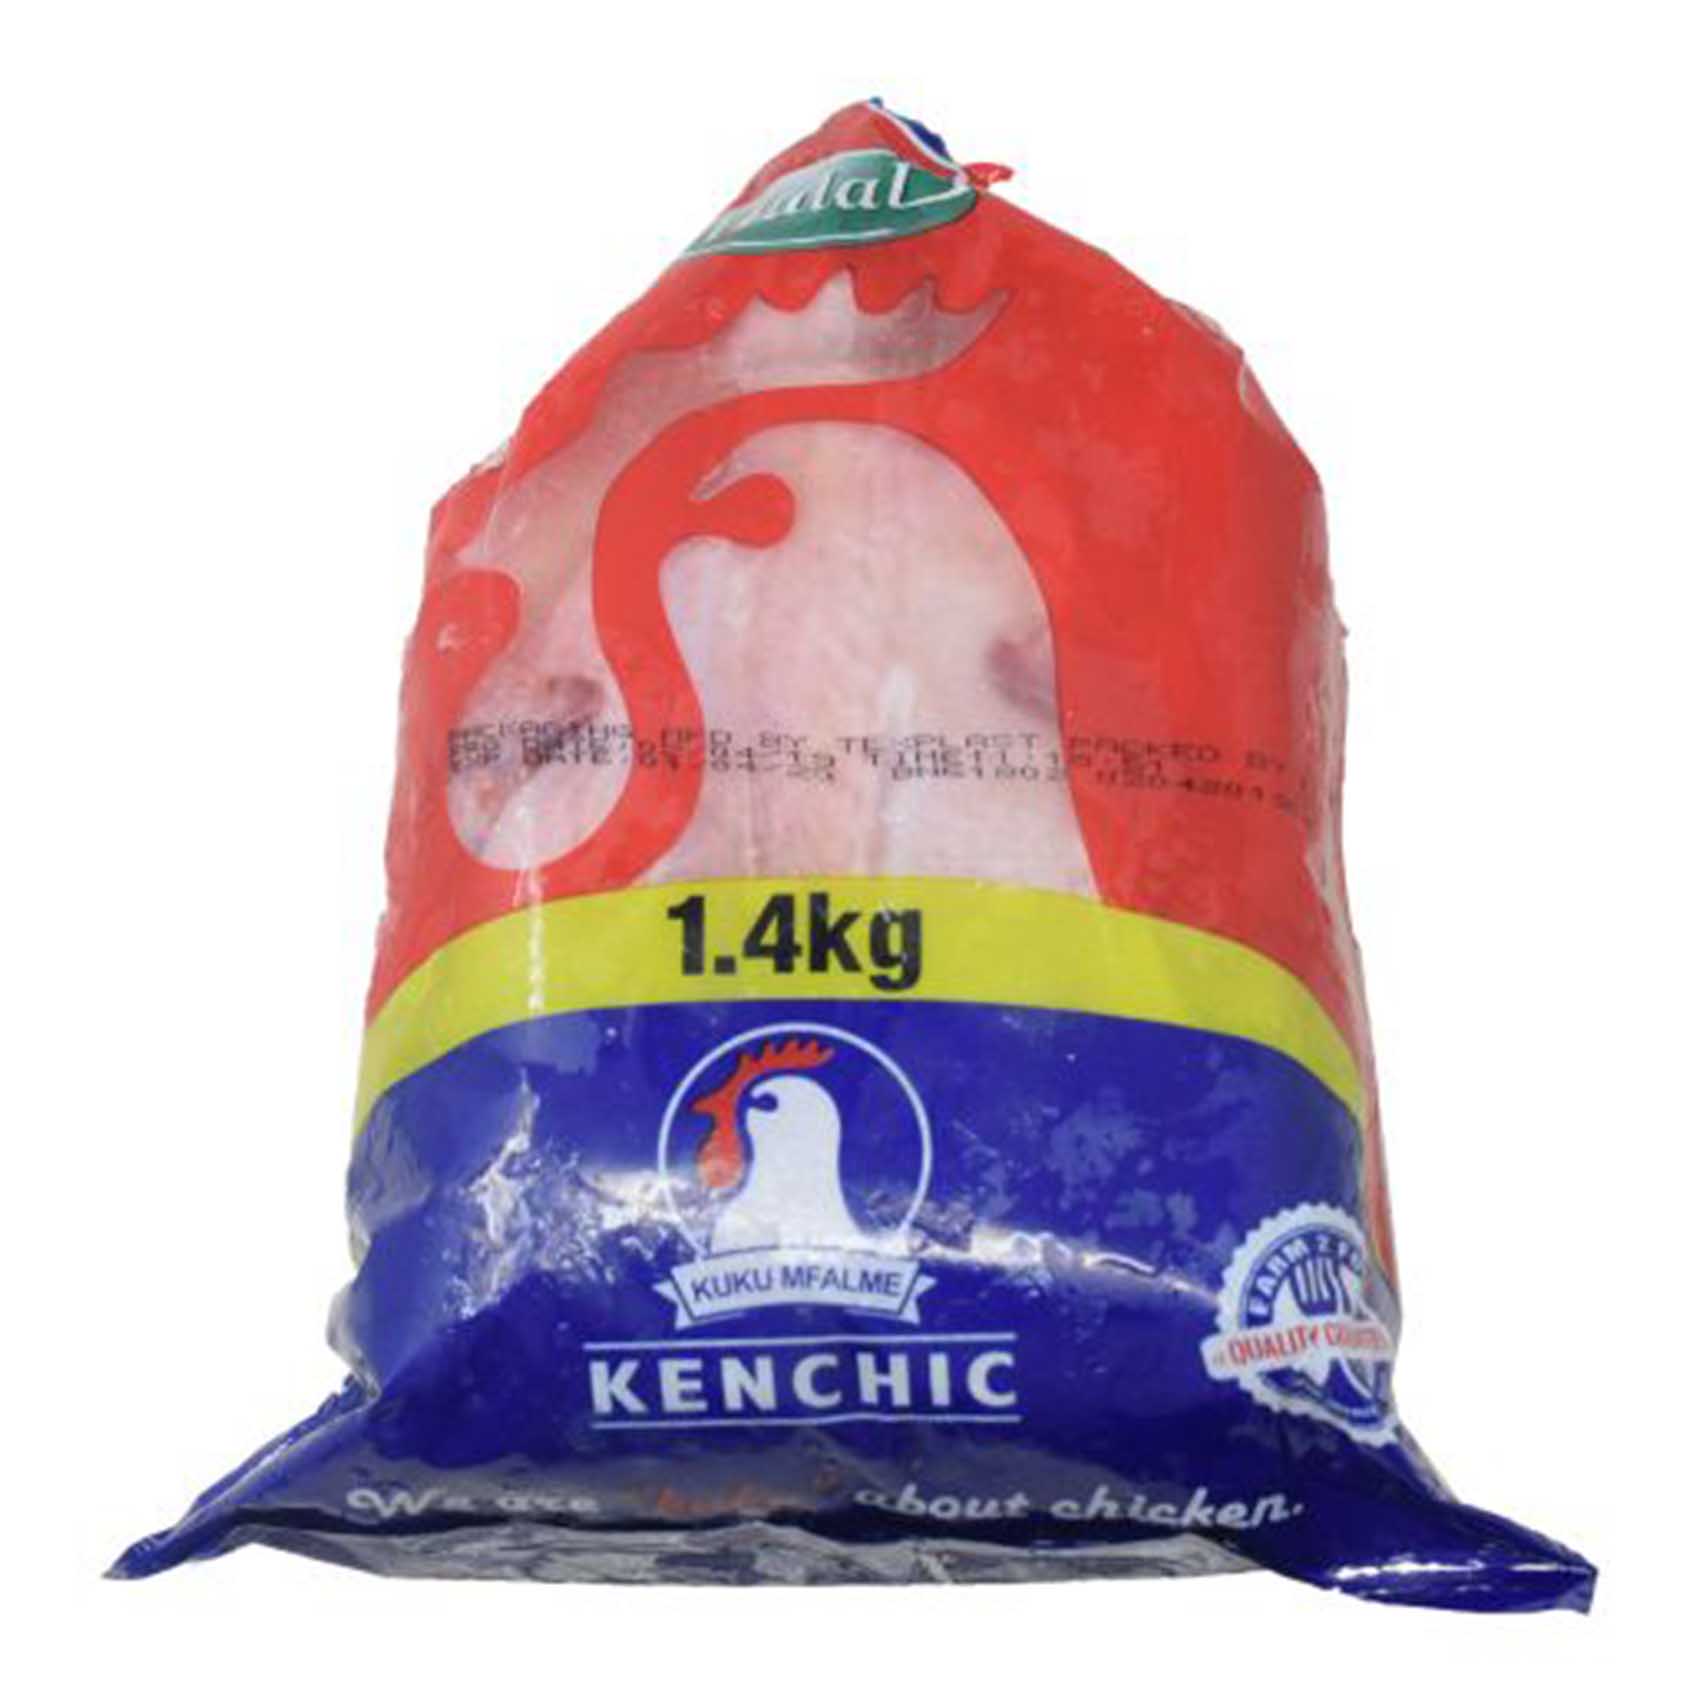 Kenchic Capon Chicken 1.4kg